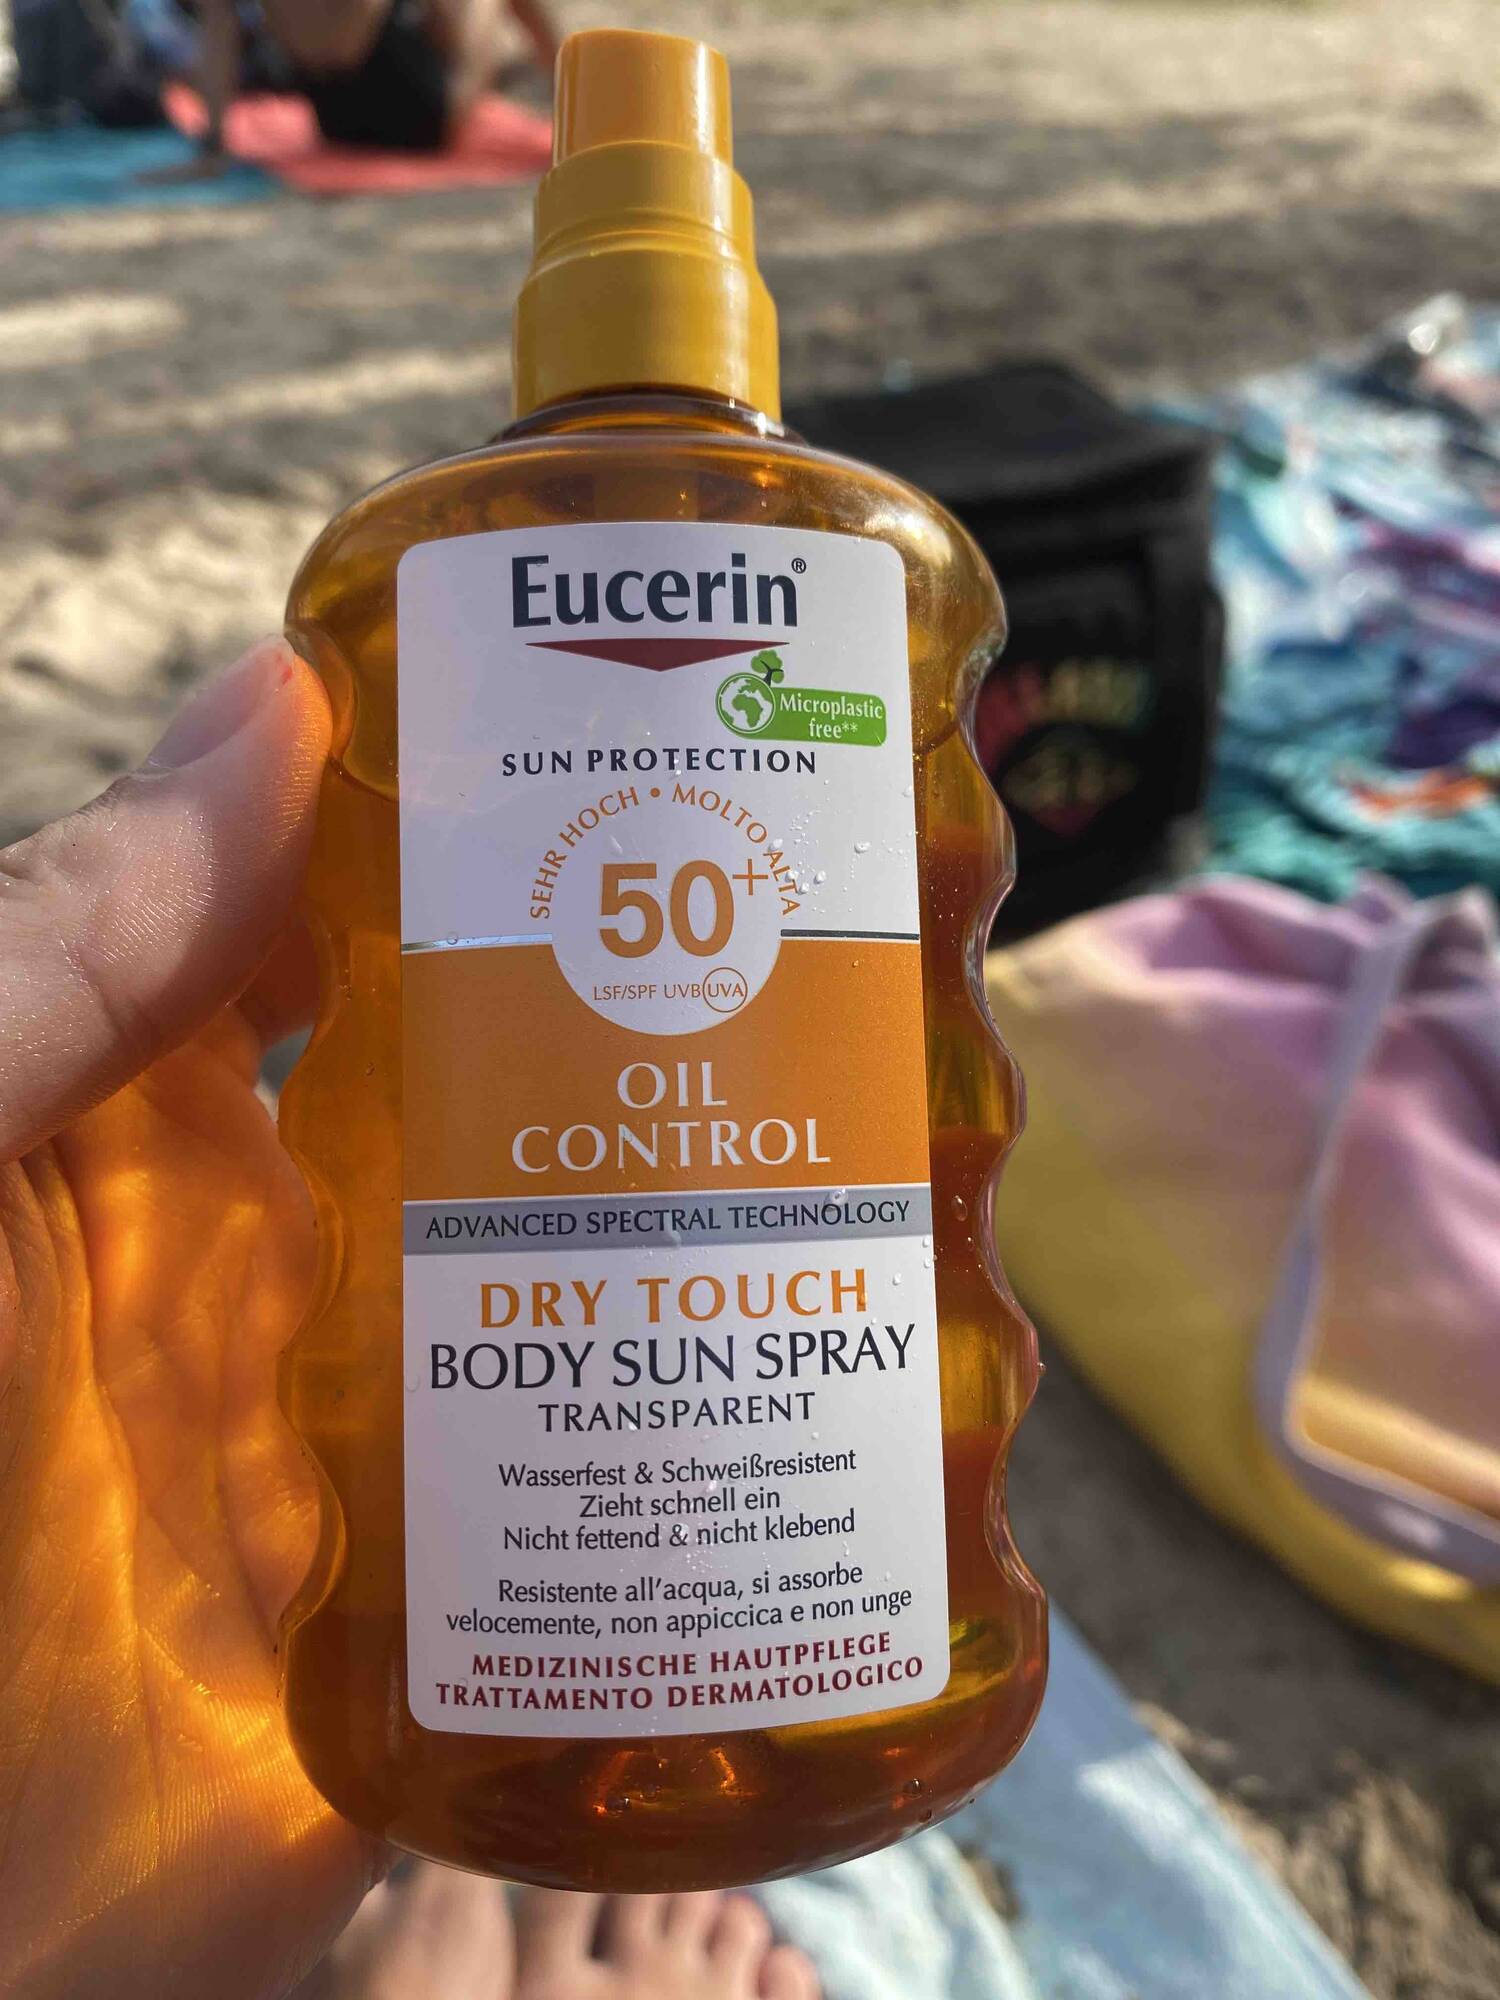 EUCERIN - Sun protection Oil control - Dry touch body sun spray LSF 50+